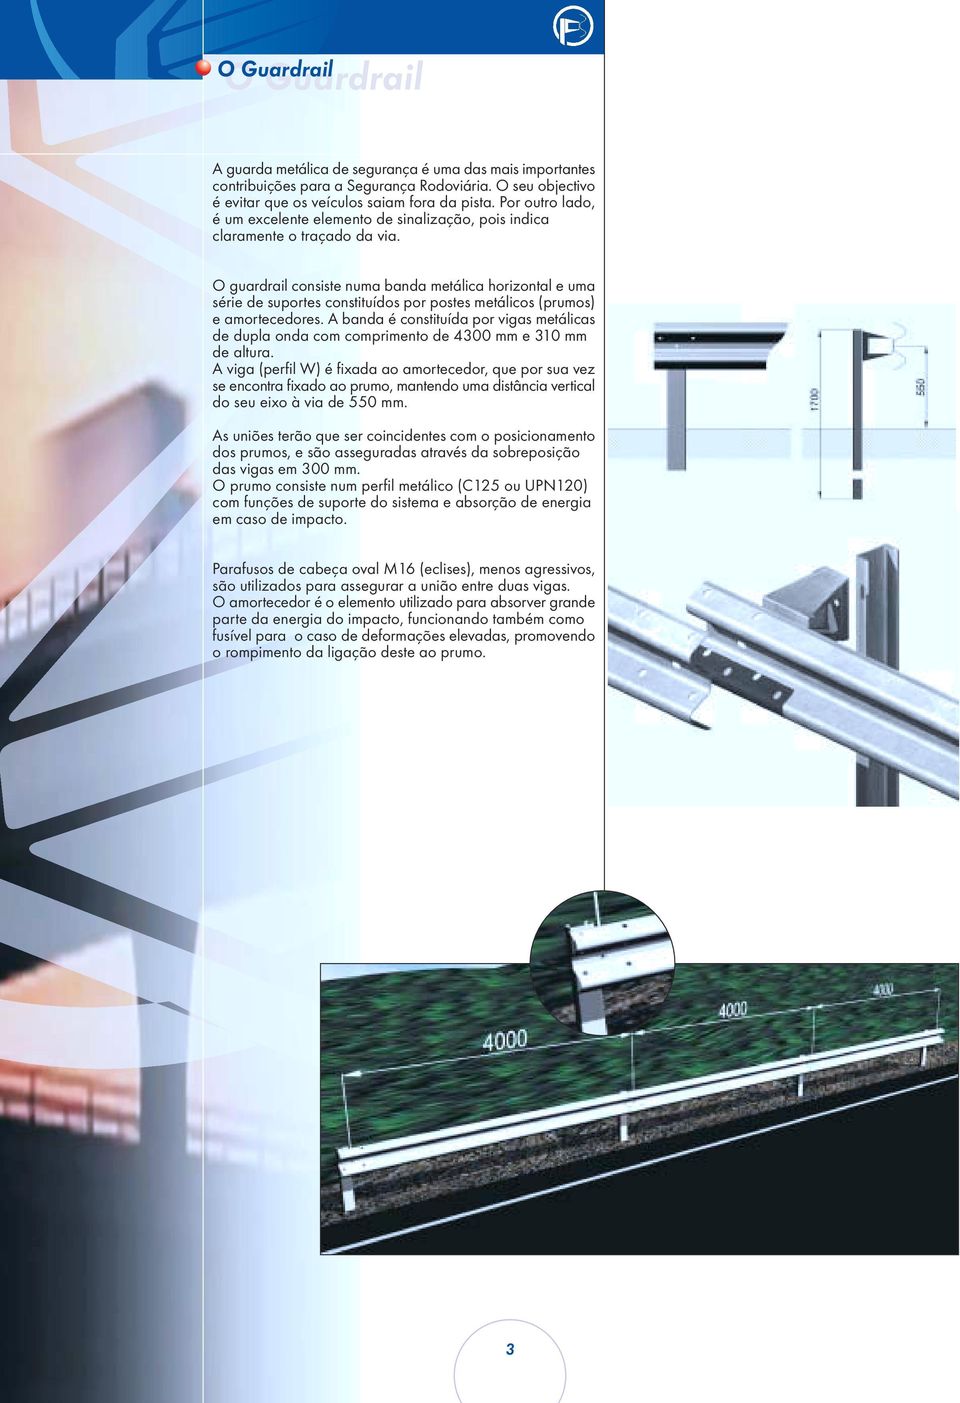 O guardrail consiste numa banda metálica horizontal e uma série de suportes constituídos por postes metálicos (prumos) e amortecedores.